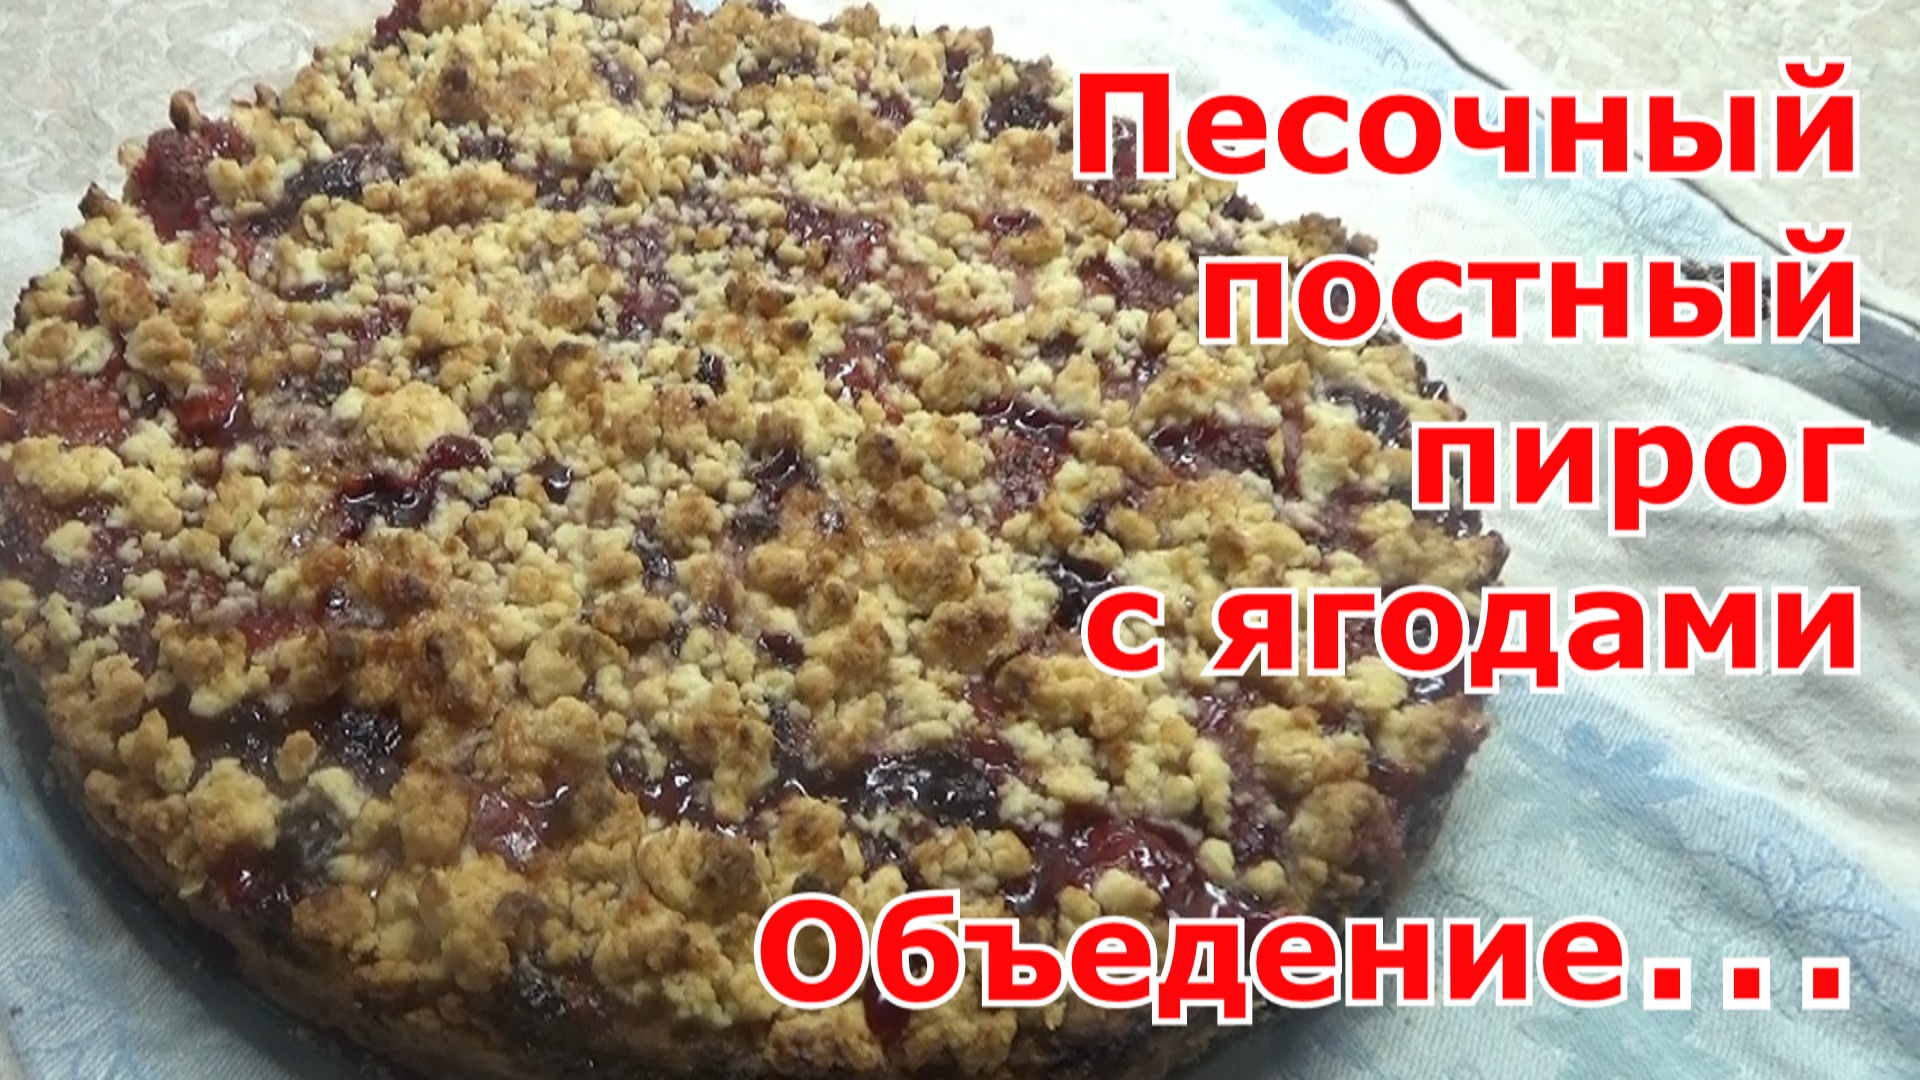 Рецепт песочного постного пирога с ягодами (повидлом). Простой, вкусный, ароматный и без заморочек!